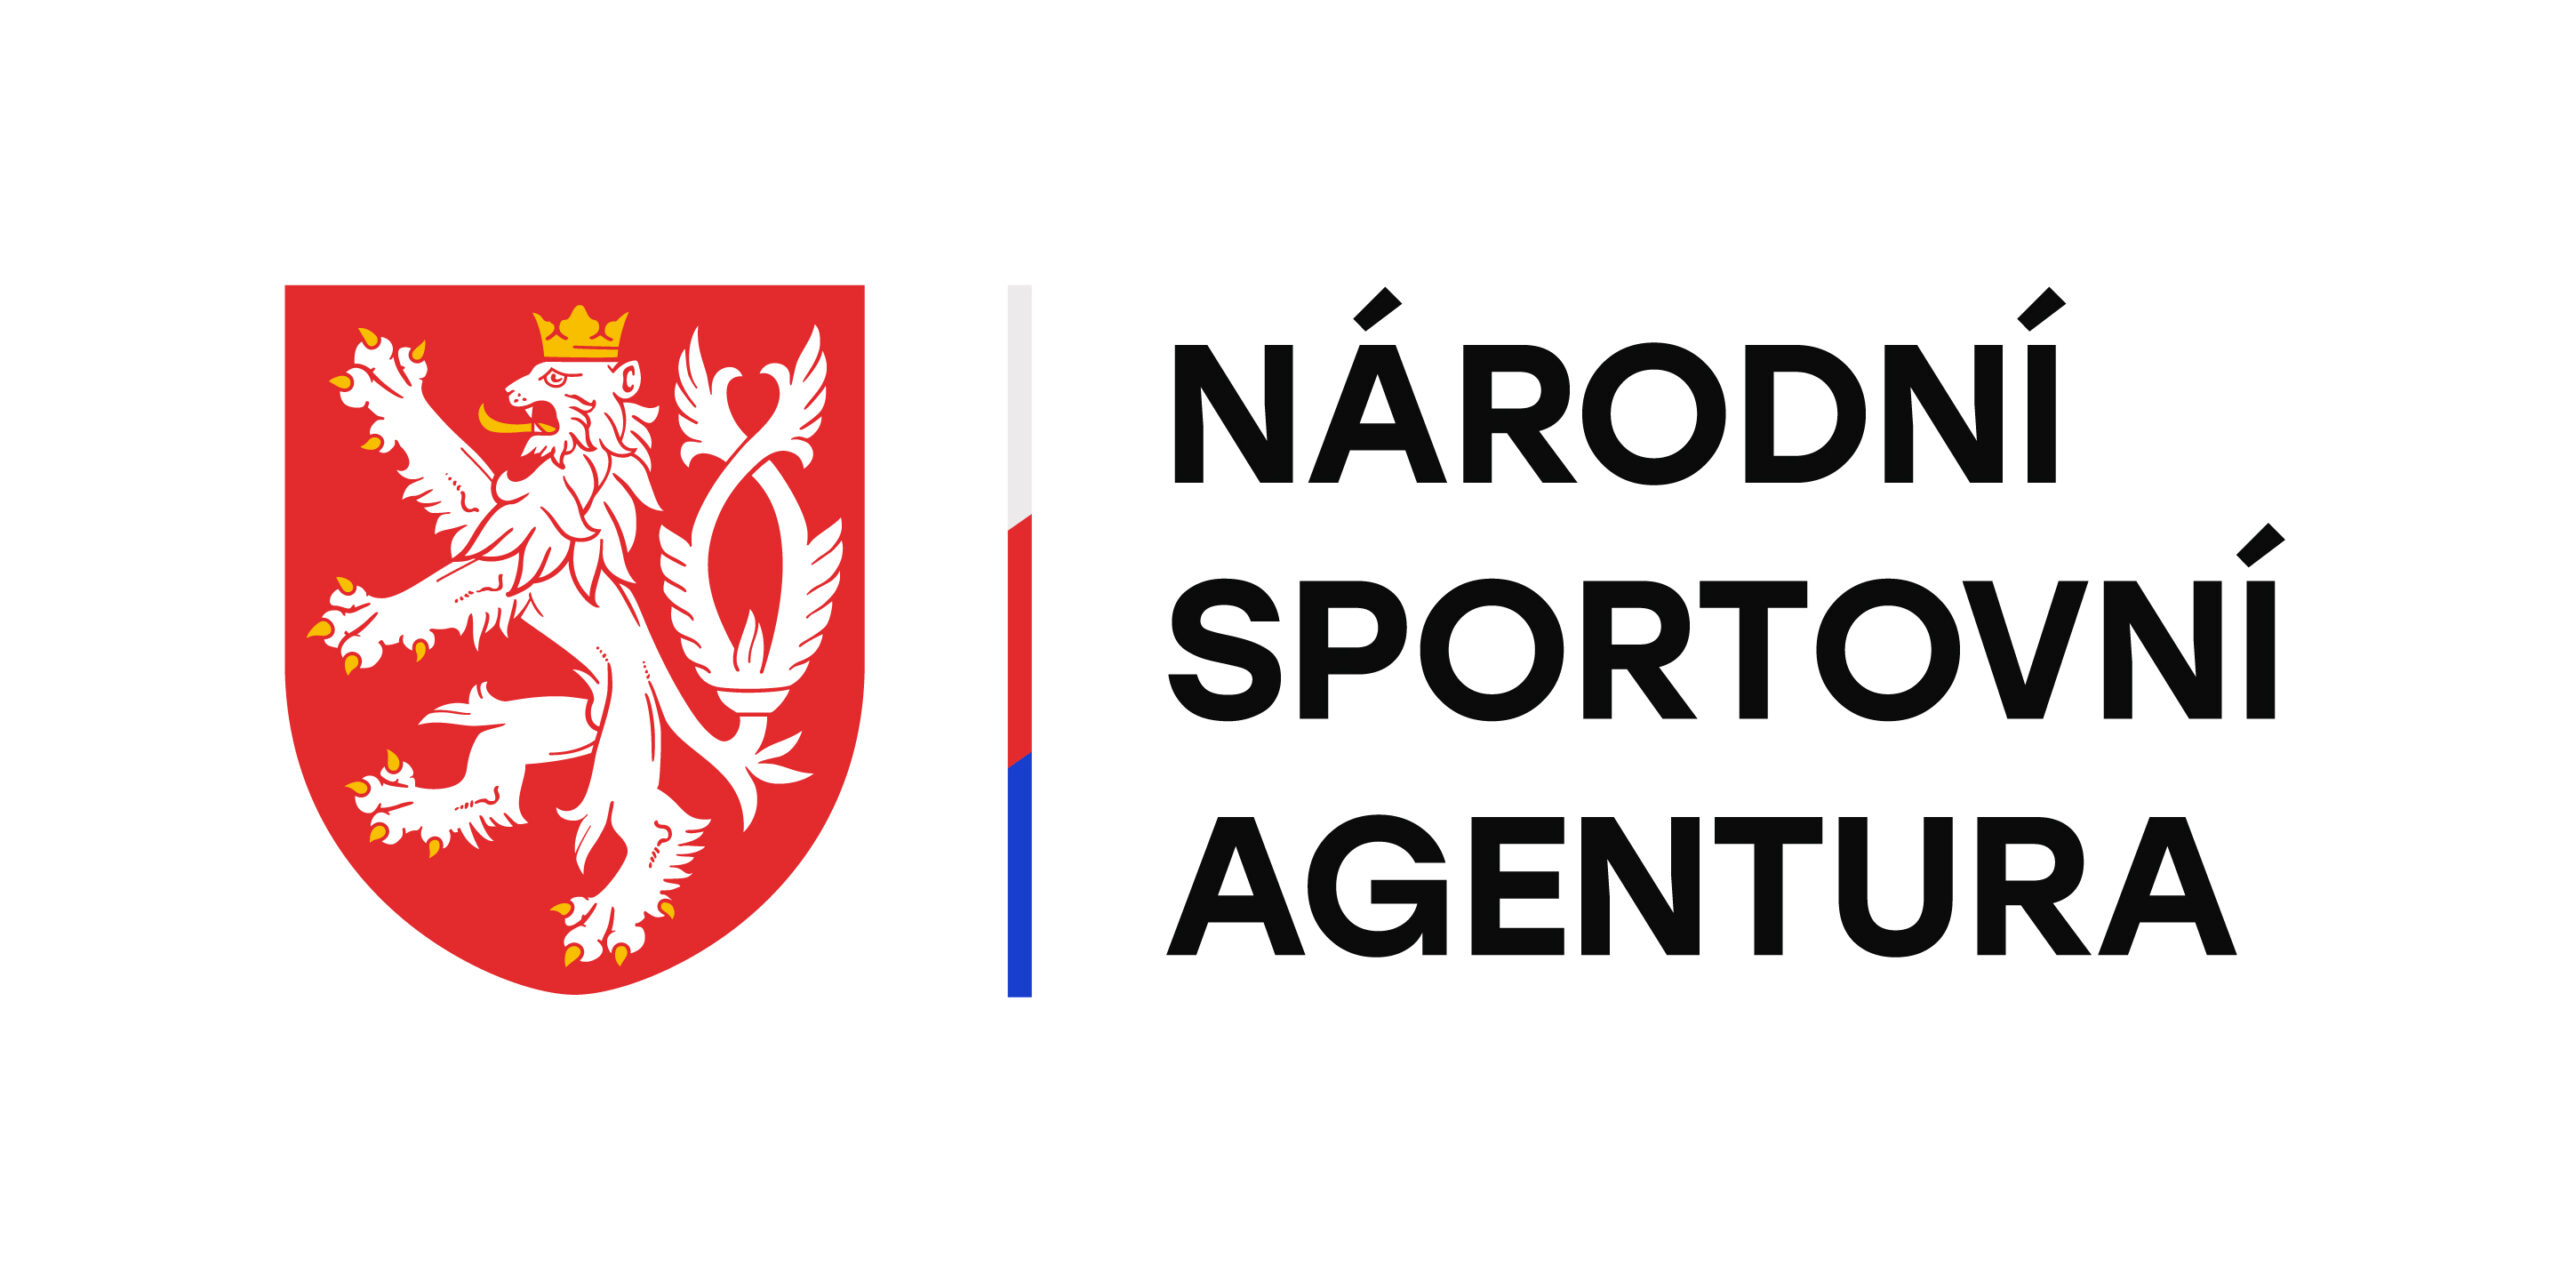 Národní sportovní agentura (NSA)